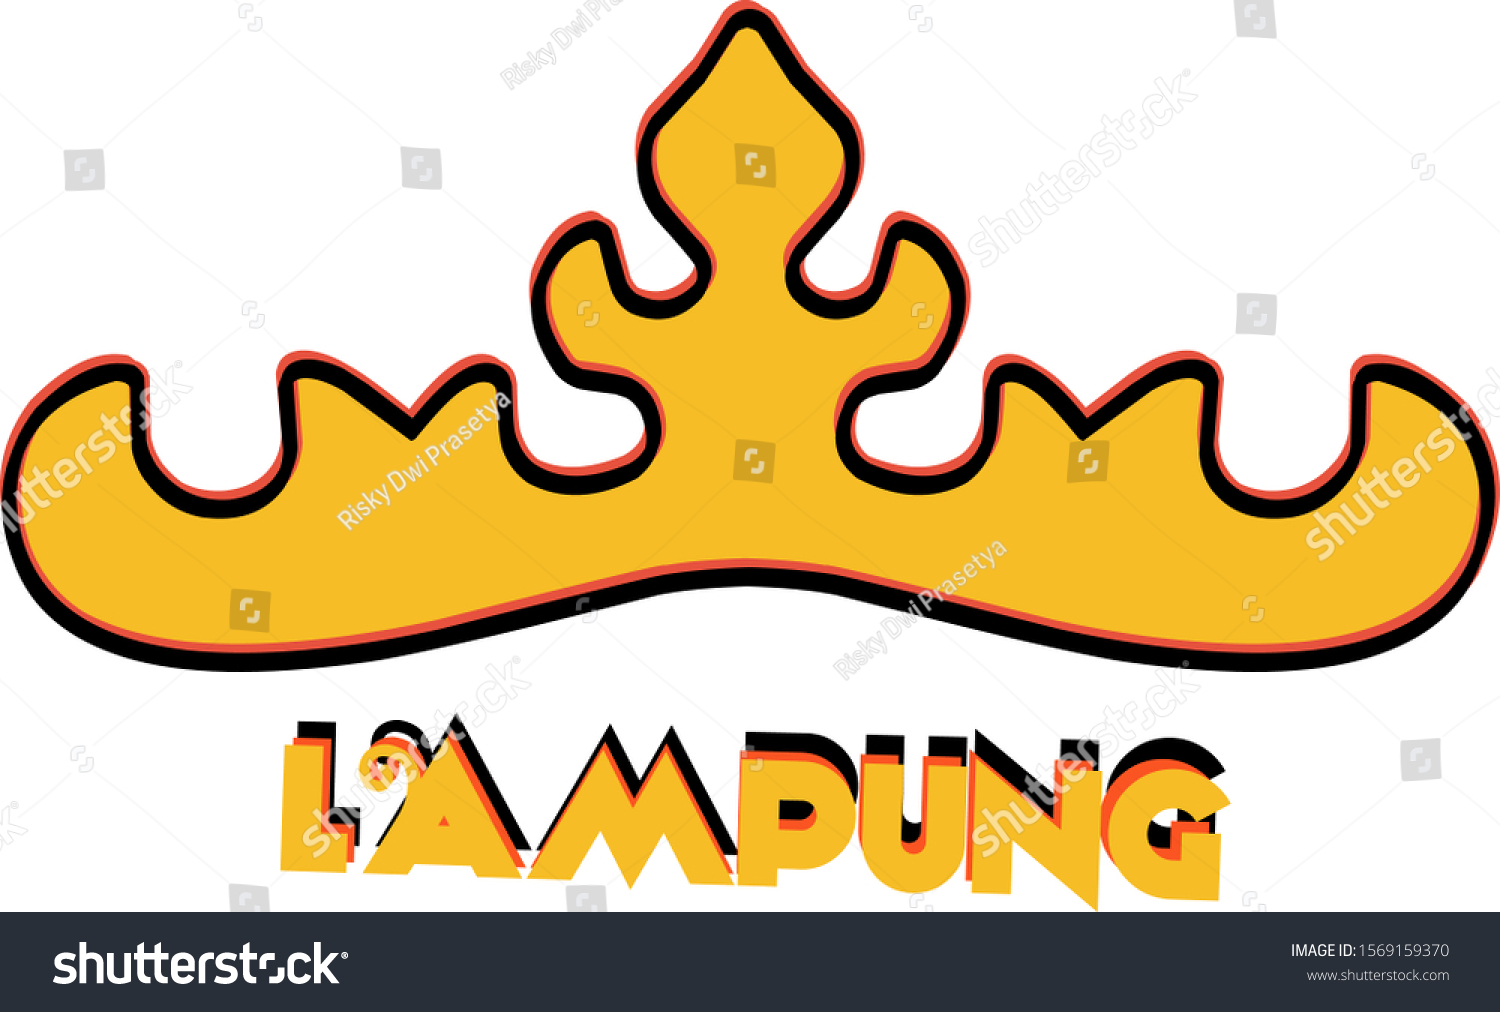 Siger Tower Logo Lampung Sumatra Indonesia Stock Vector Royalty Free 1569159370